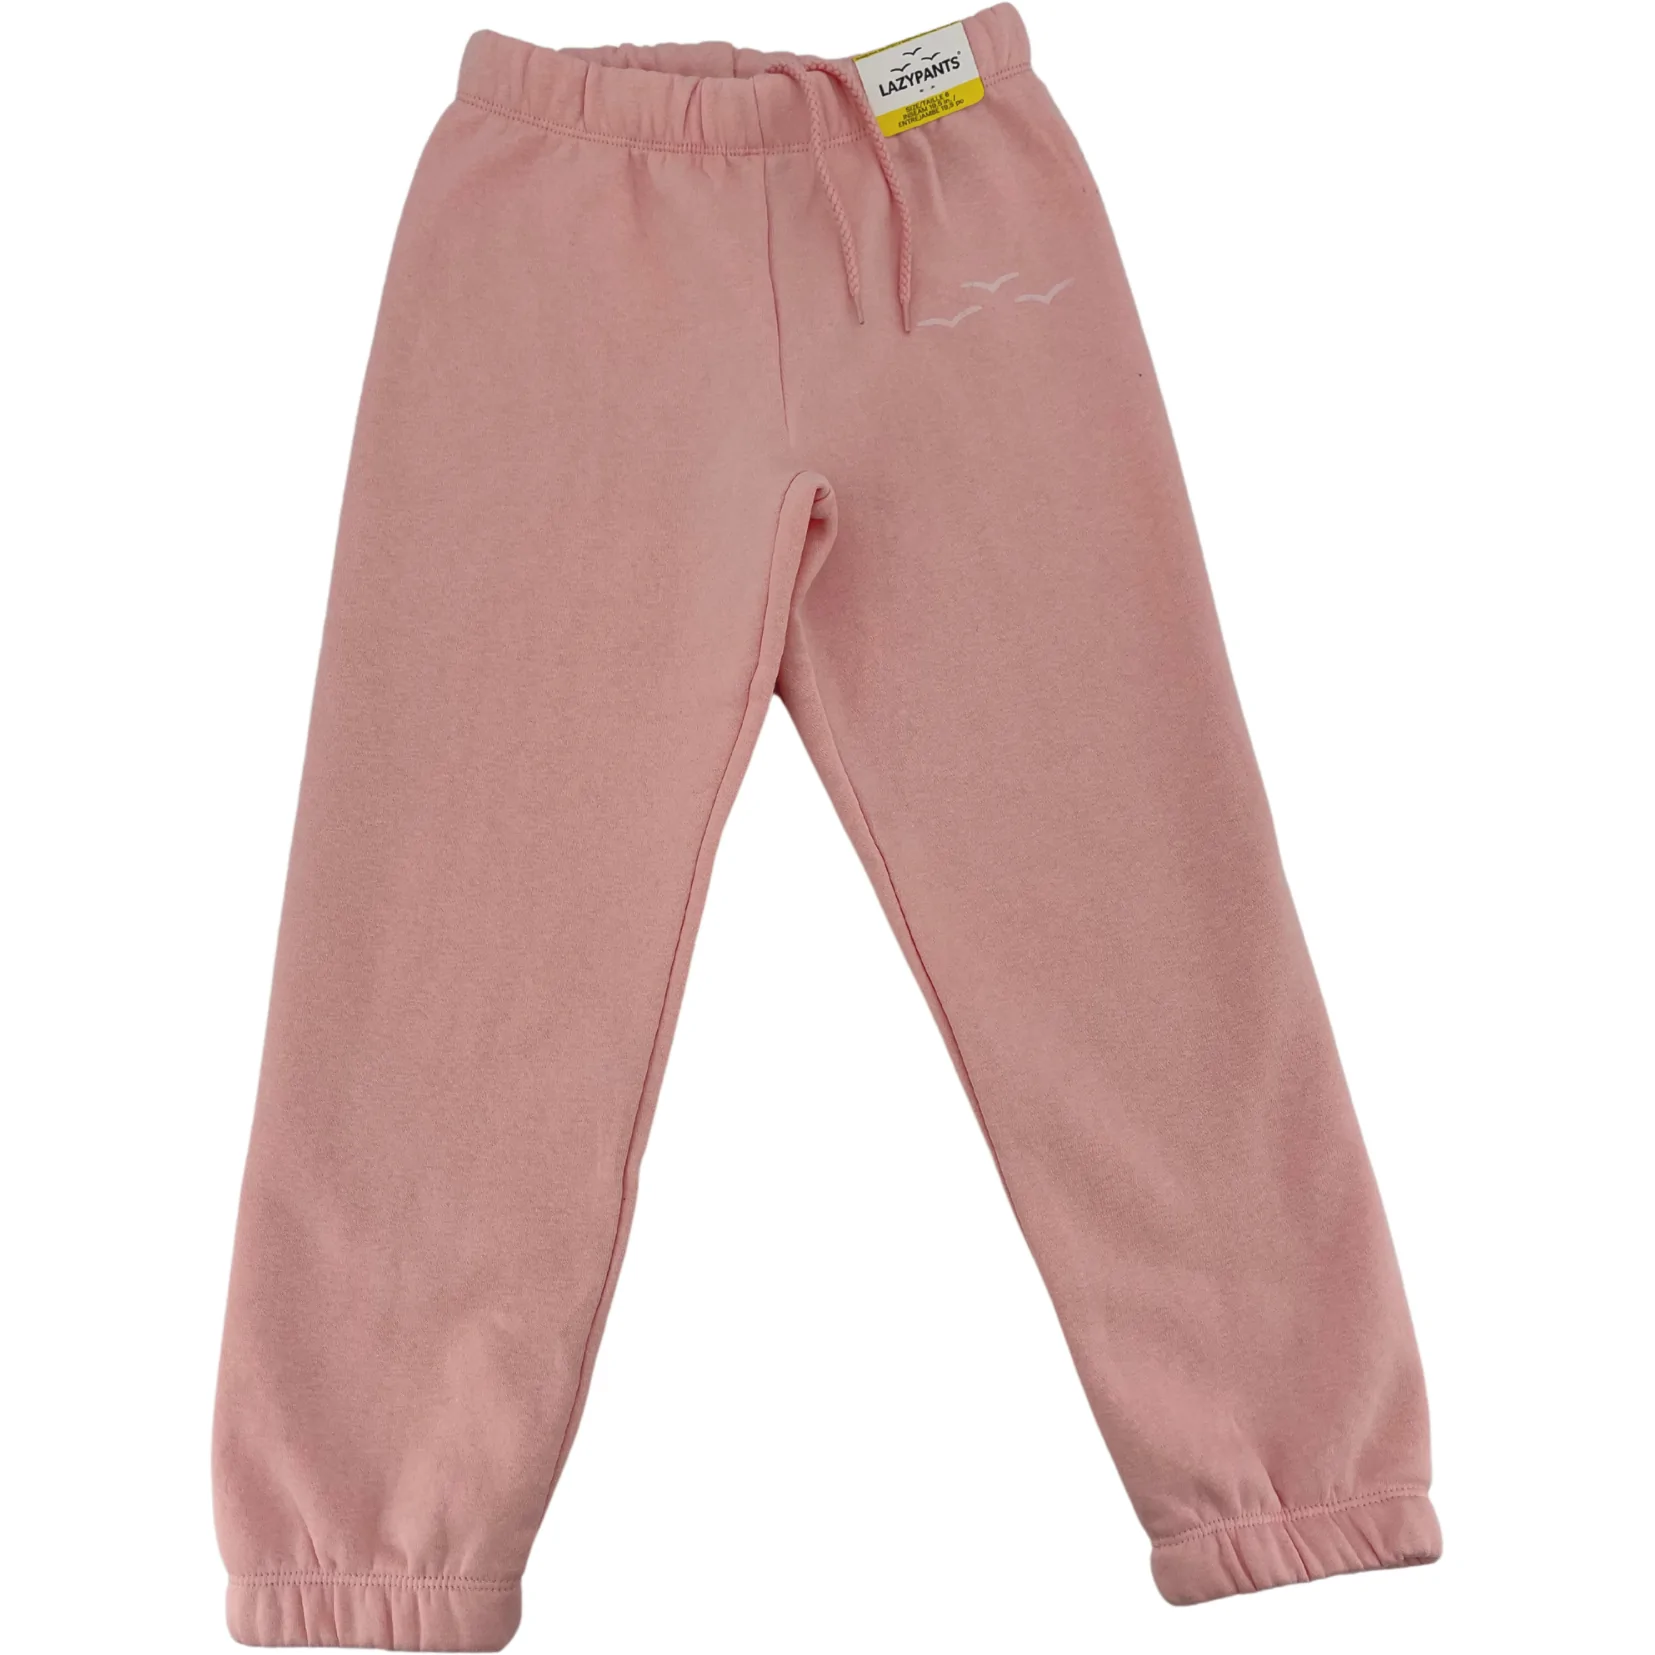 Lazy Pants Children’s TrackSuit Set: Sweatpants & Sweatshirt / Pink /  Various Sizes